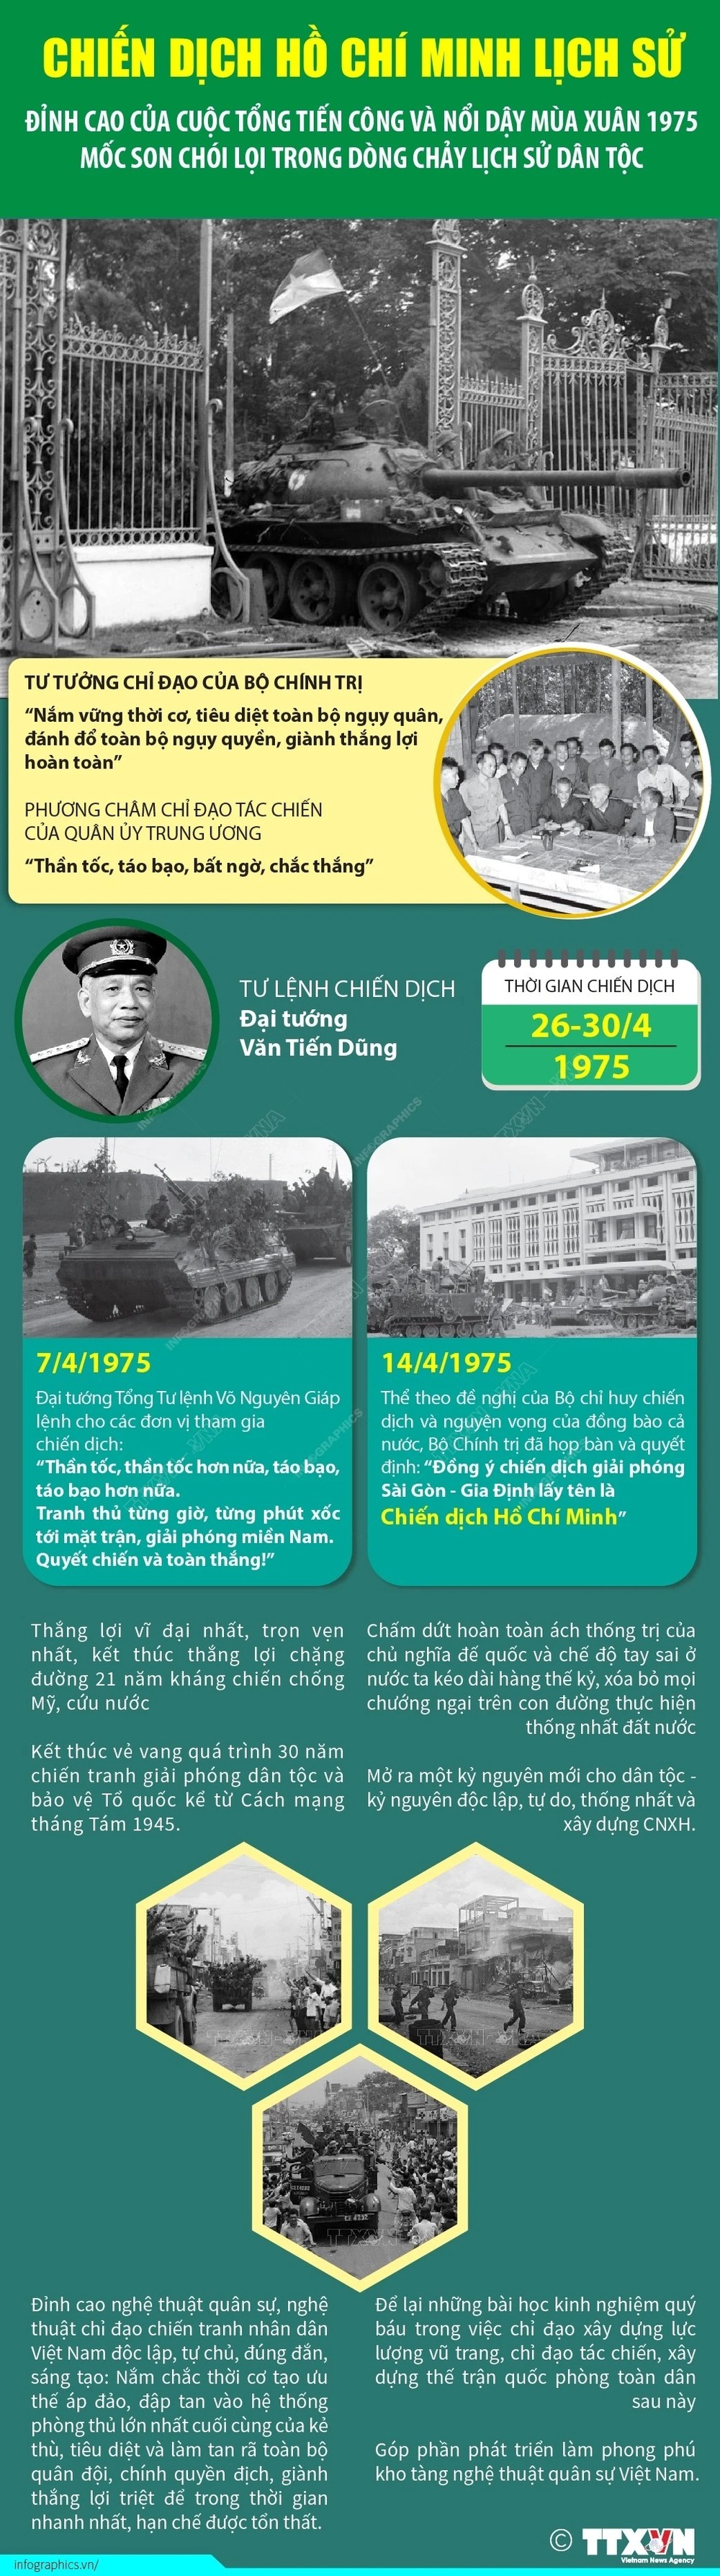 Chiến dịch Hồ Chí Minh - Đỉnh cao thắng lợi của cách mạng Việt Nam ảnh 7